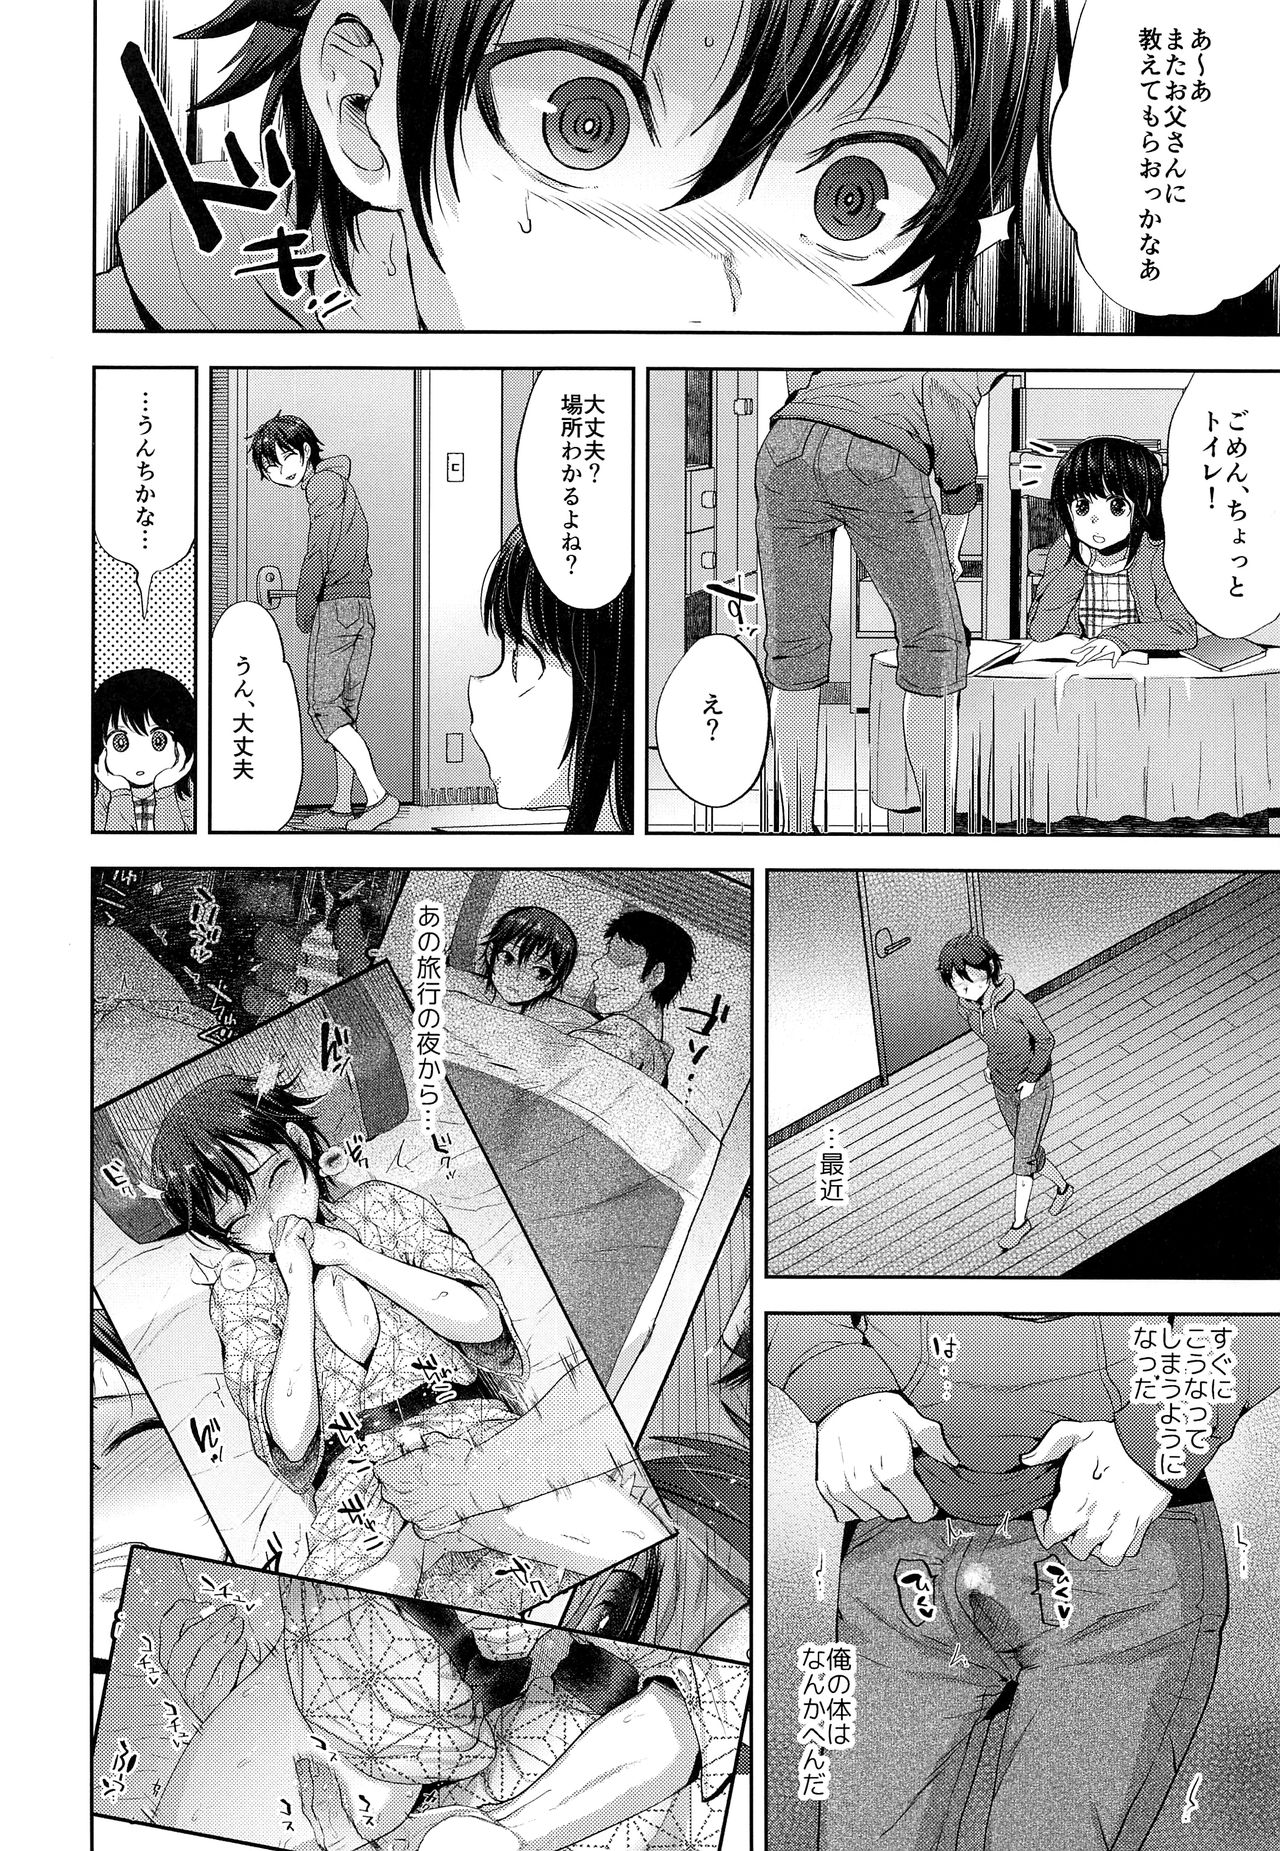 1280px x 1851px - Shikkaku Boyfriend - Page 5 - Comic Porn XXX